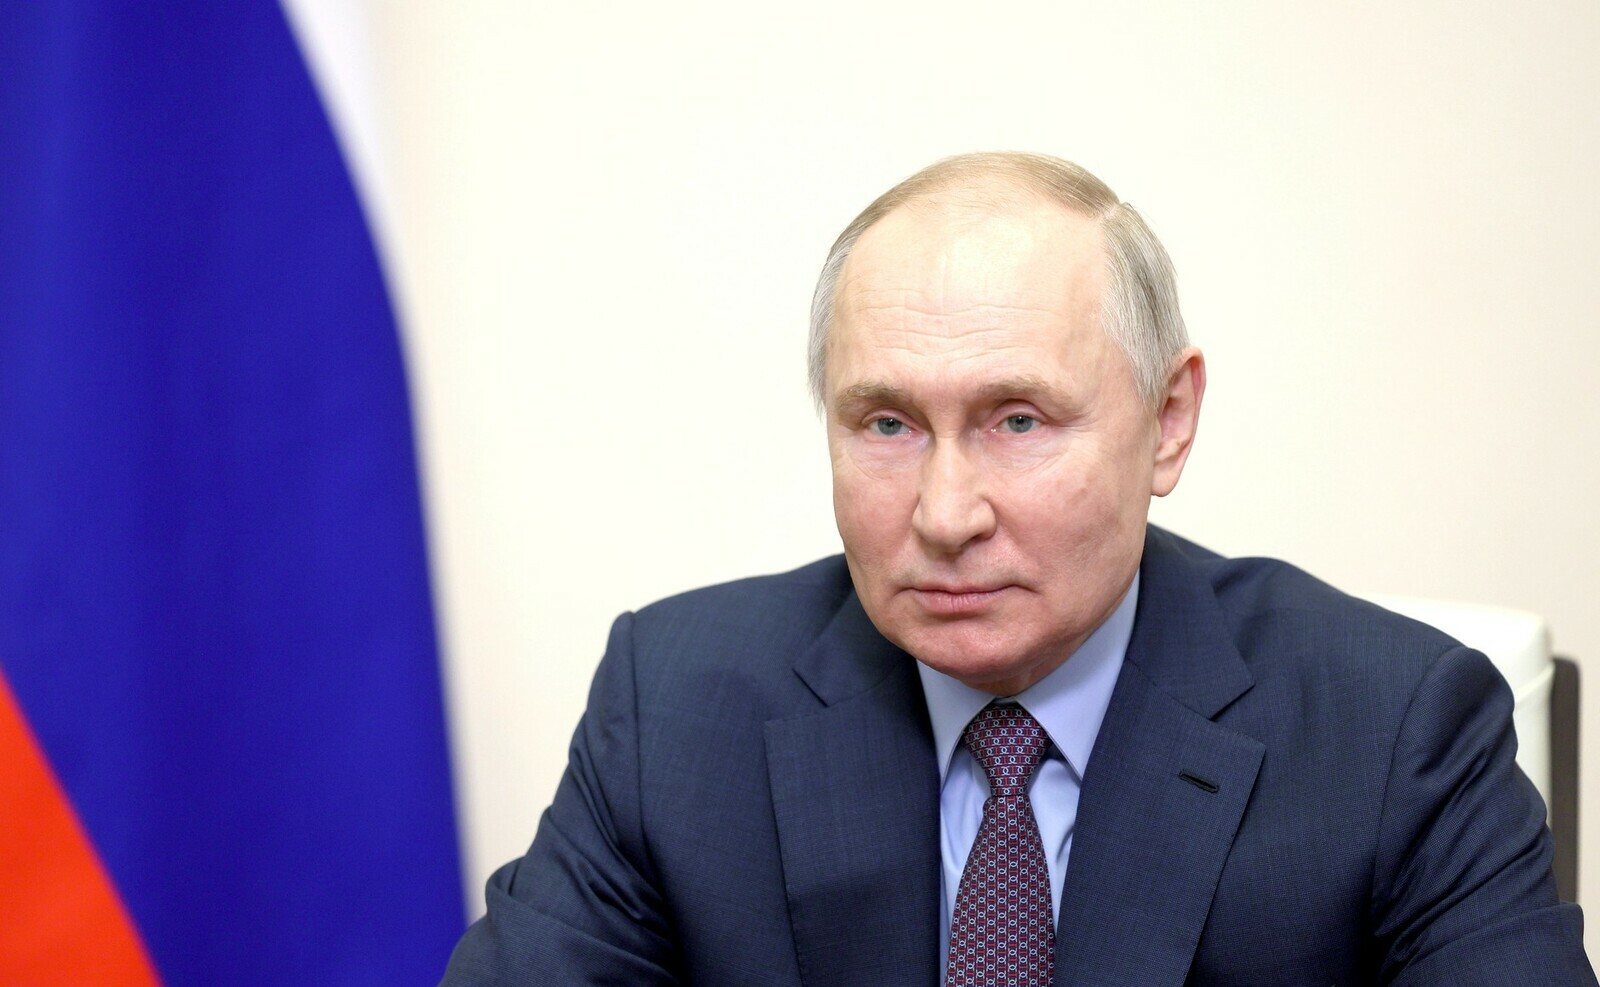 Путин Раҫҫей ученӑйĕсемпе хамăр çĕршыври медицина аталанӑвне сӳтсе явнӑ